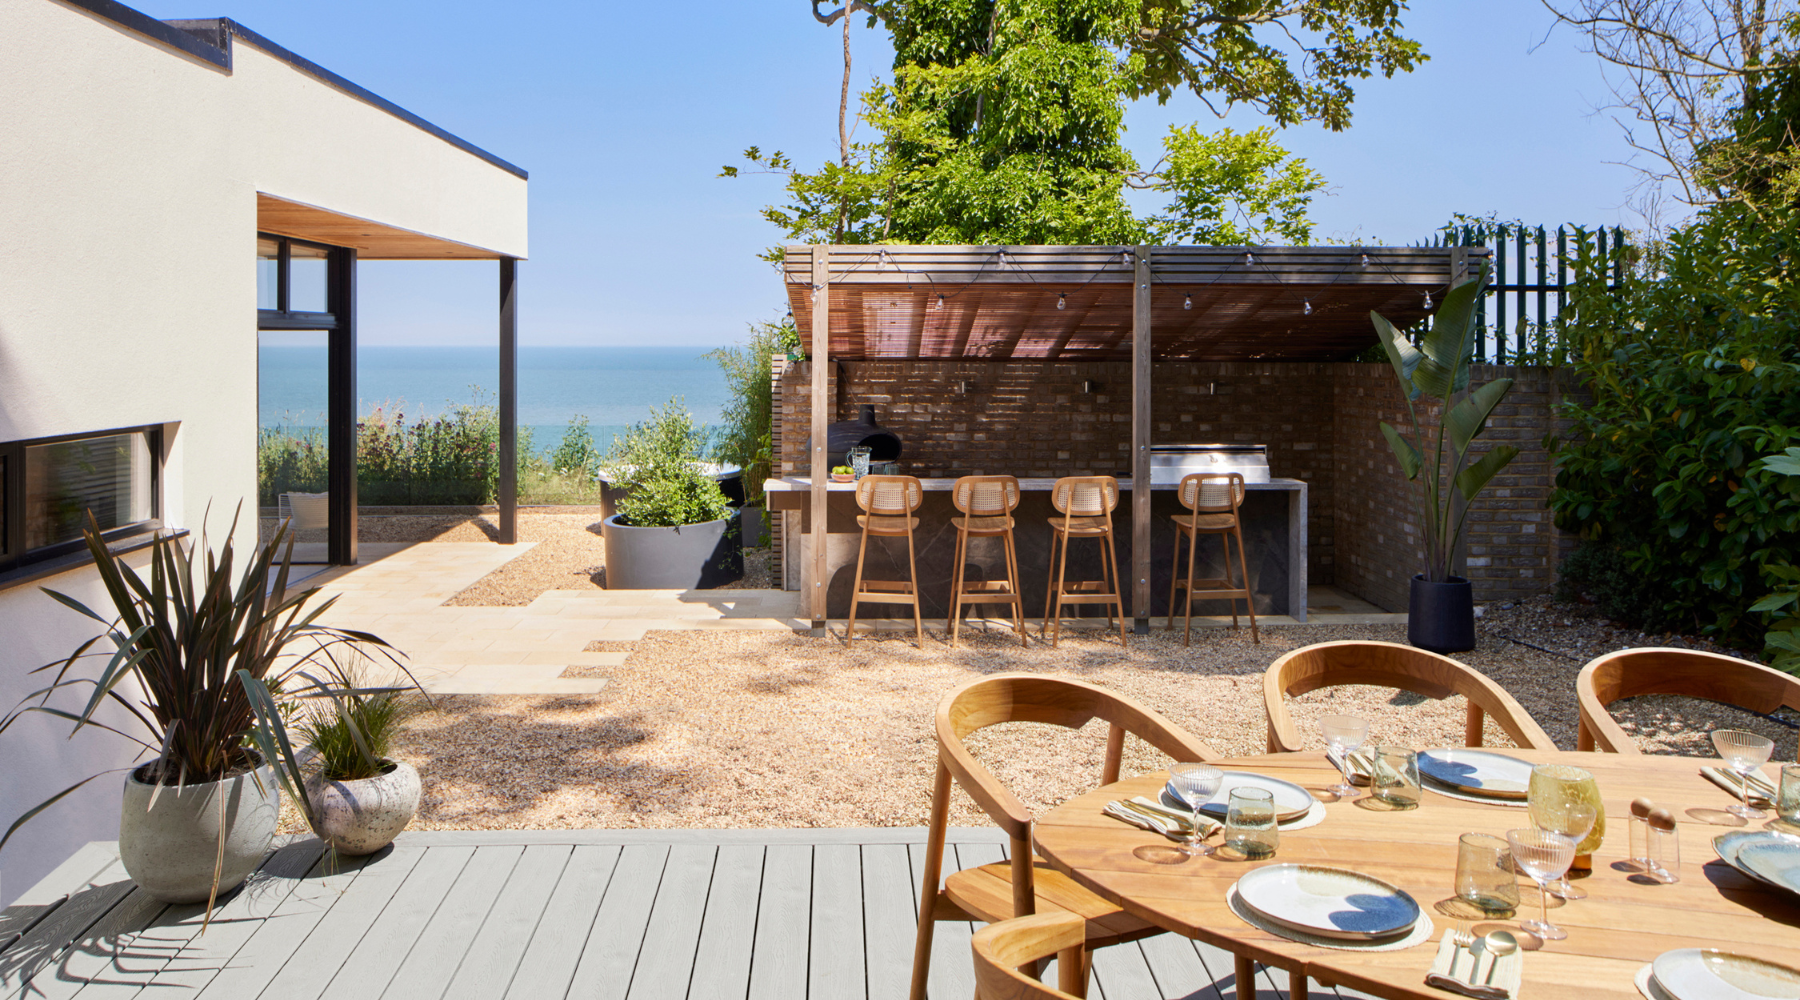 Omaze Million Pound House Draw Kent Outdoor Kitchen Dining Area